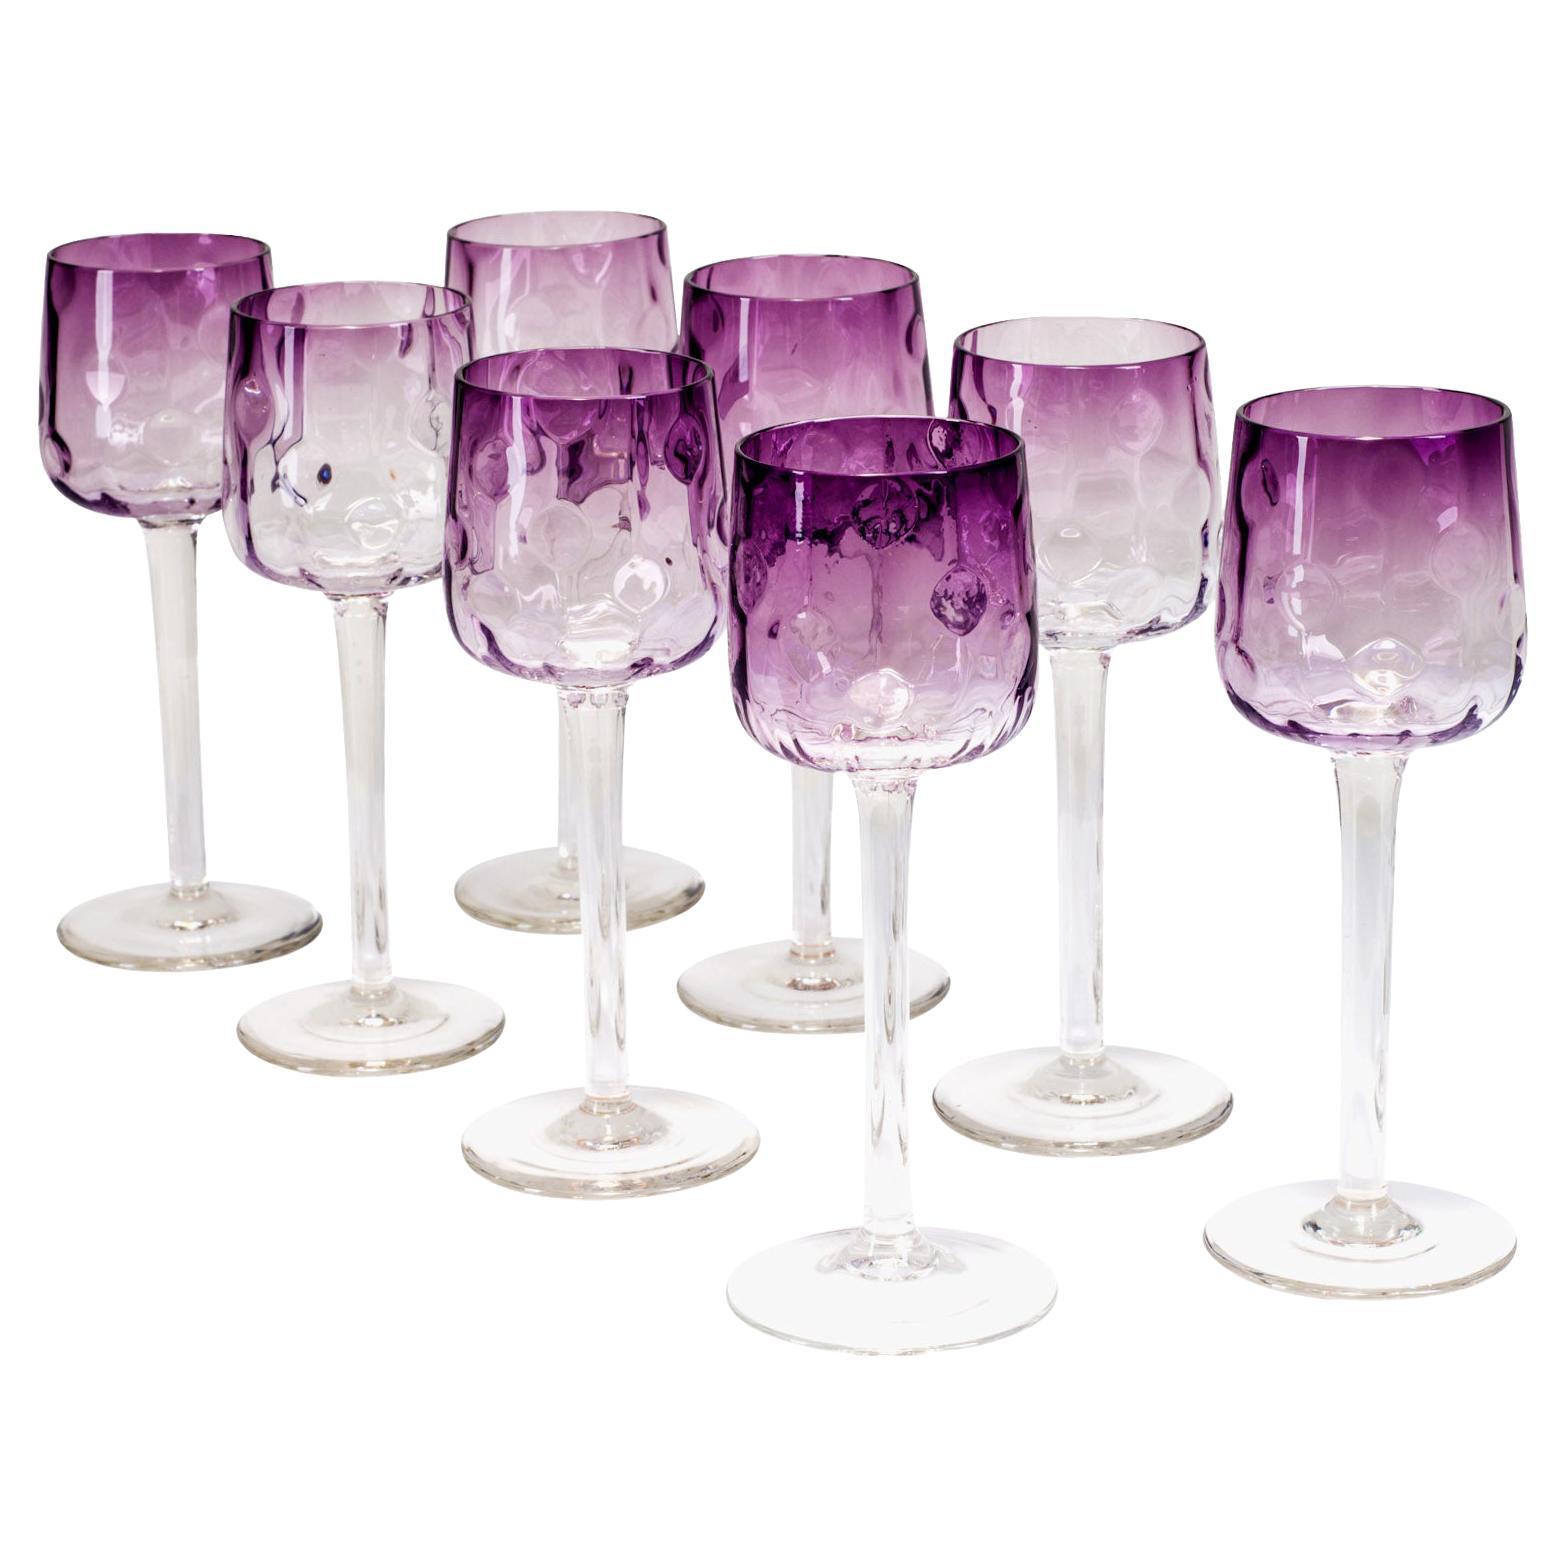 Set of 9 Purple Stem Glasses Koloman Moser Meyr's Neffe circa 1899 Jugendstil